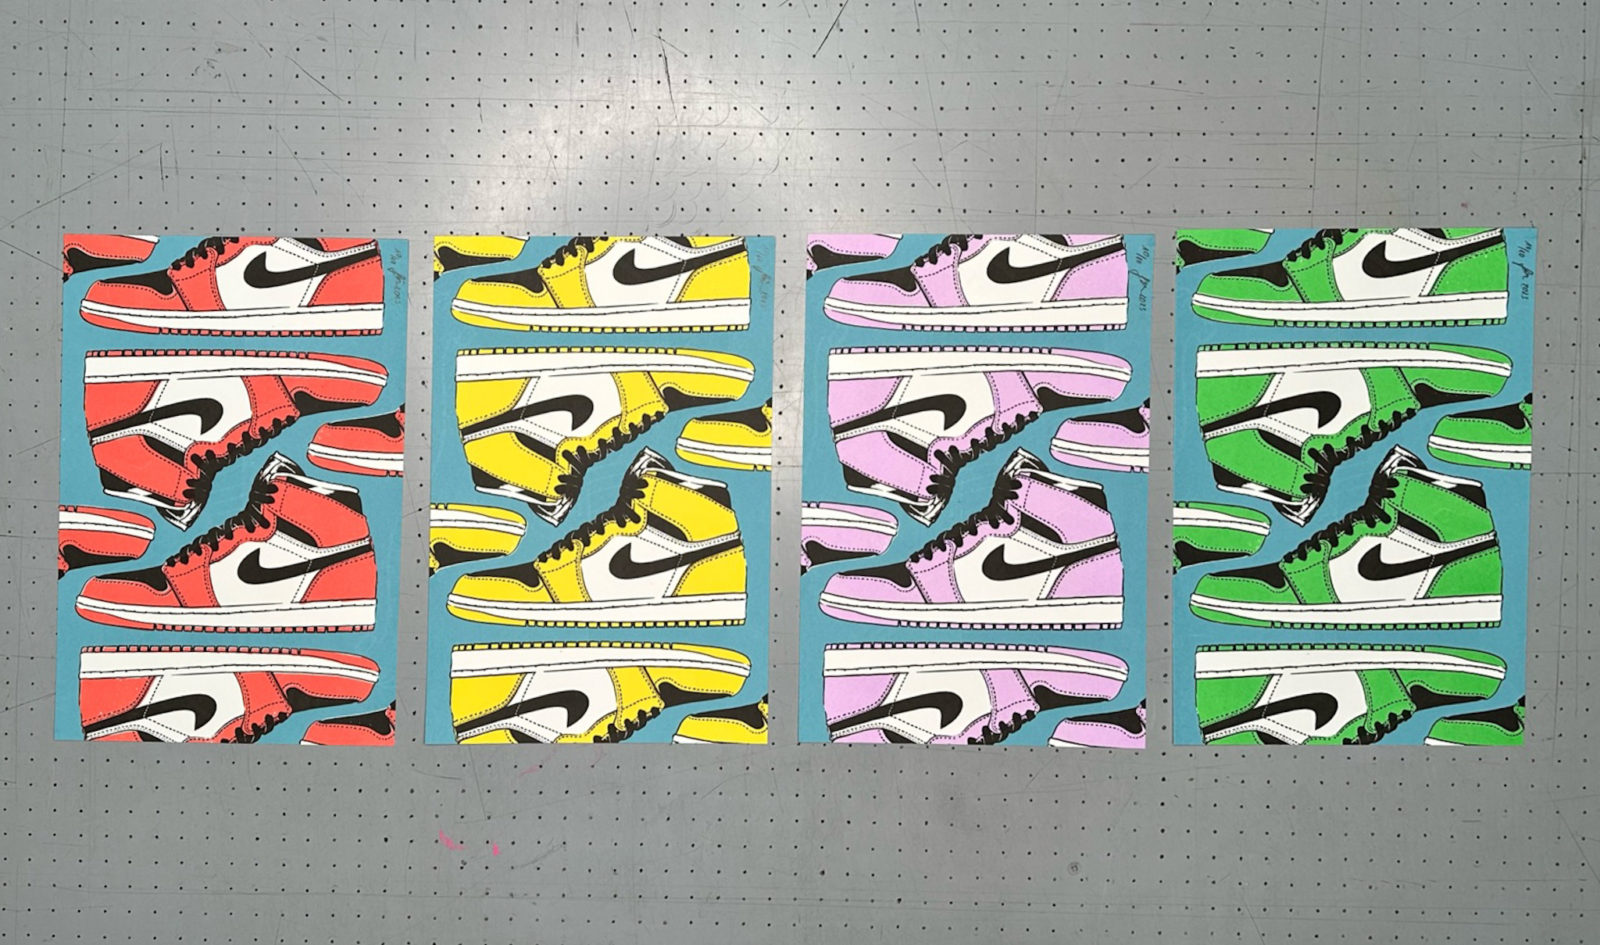 New Kicks - Air Jordan Artprint im Set